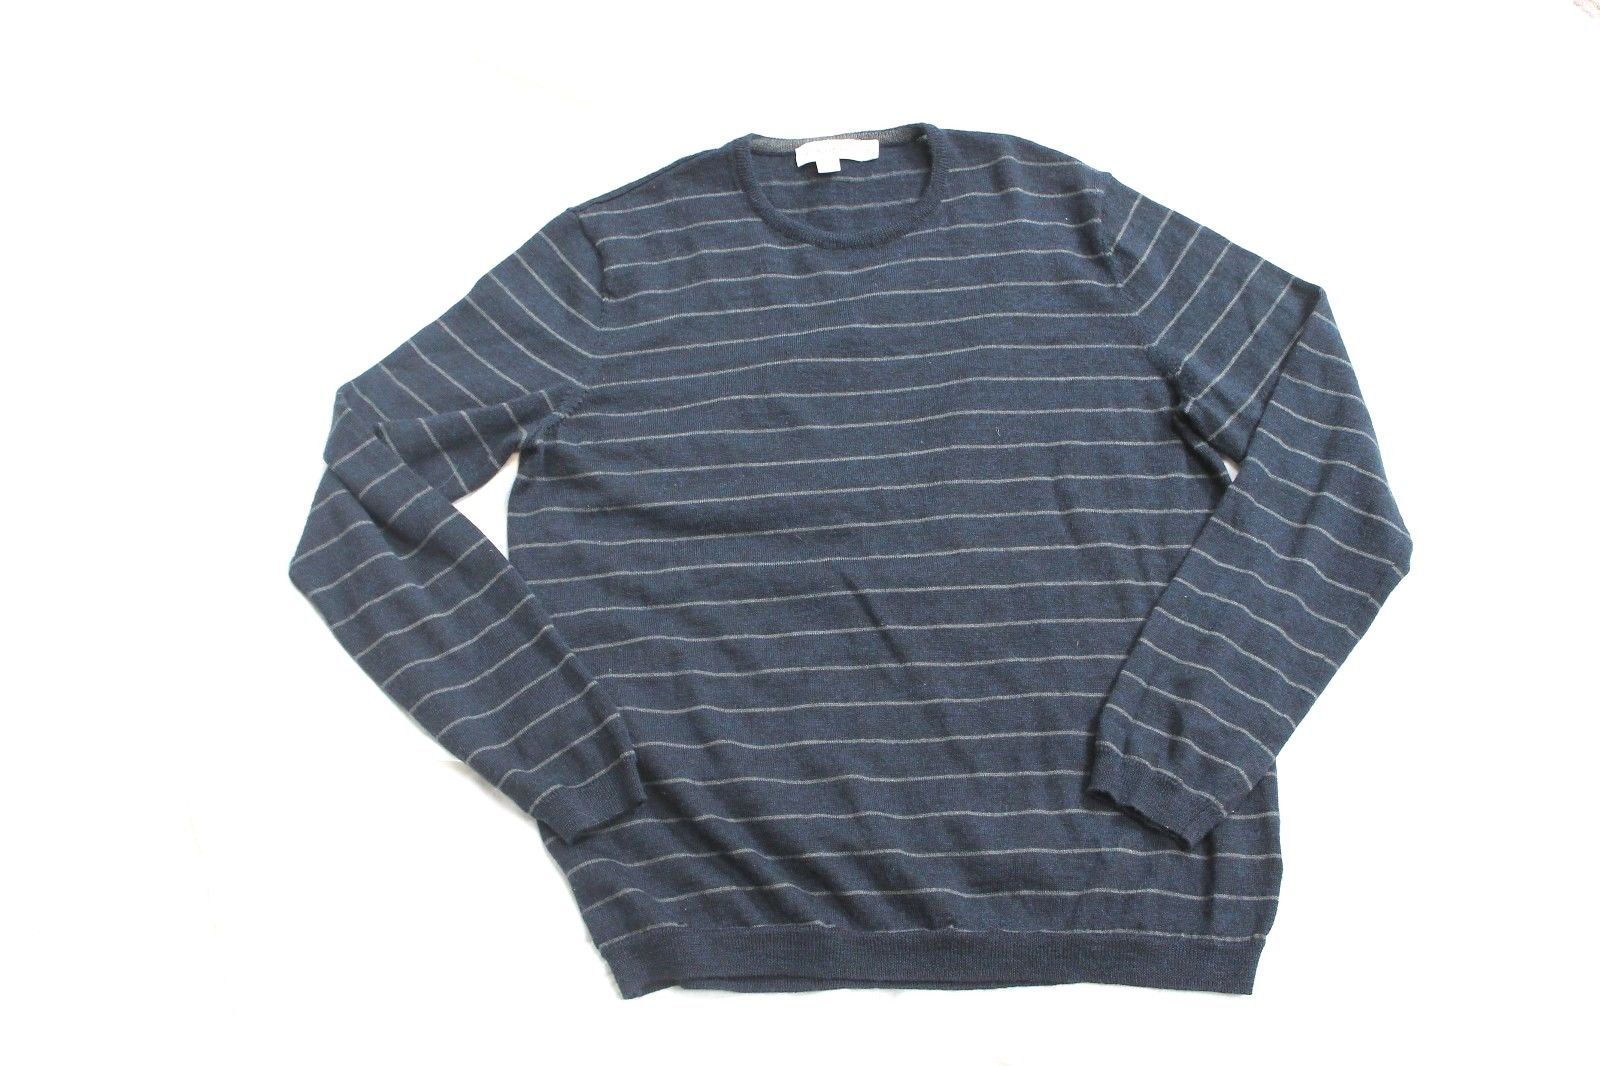 CALVIN KLEIN Navy & Gray Striped Crewneck Sweater Shirt Sz M Wool Blend - $14.85